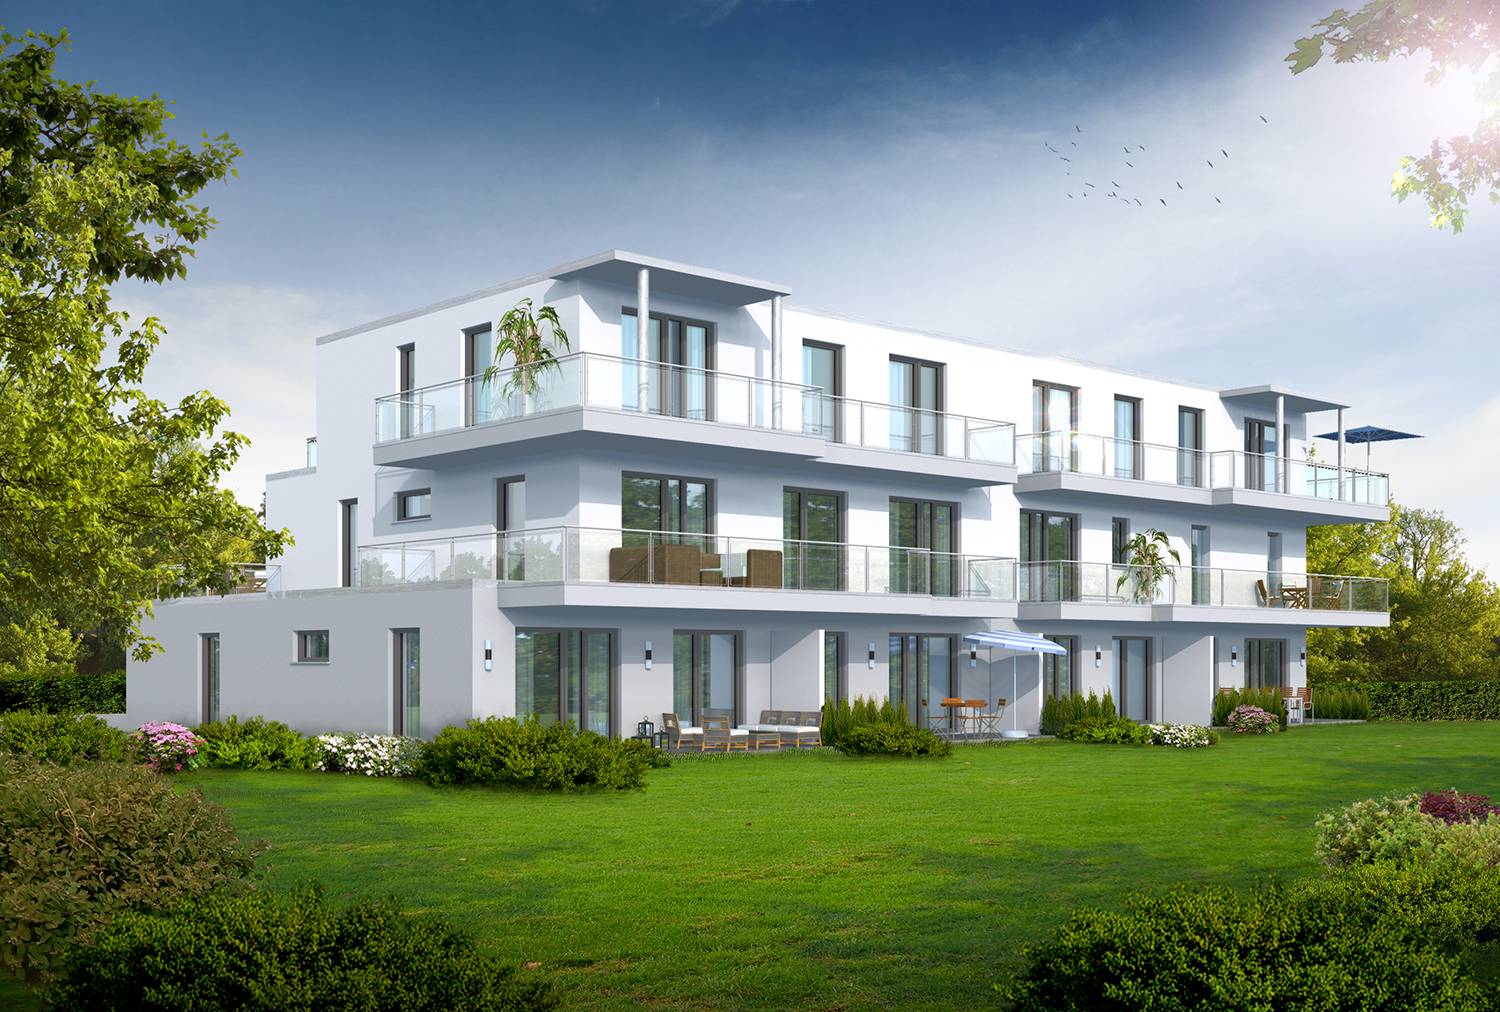 Entwurf Mehrfamilienhaus. Architekturvisualisierung der Garten-/Terrassenseite, visualisiert für OBS-Teccadus GmbH (Jahr 2021)